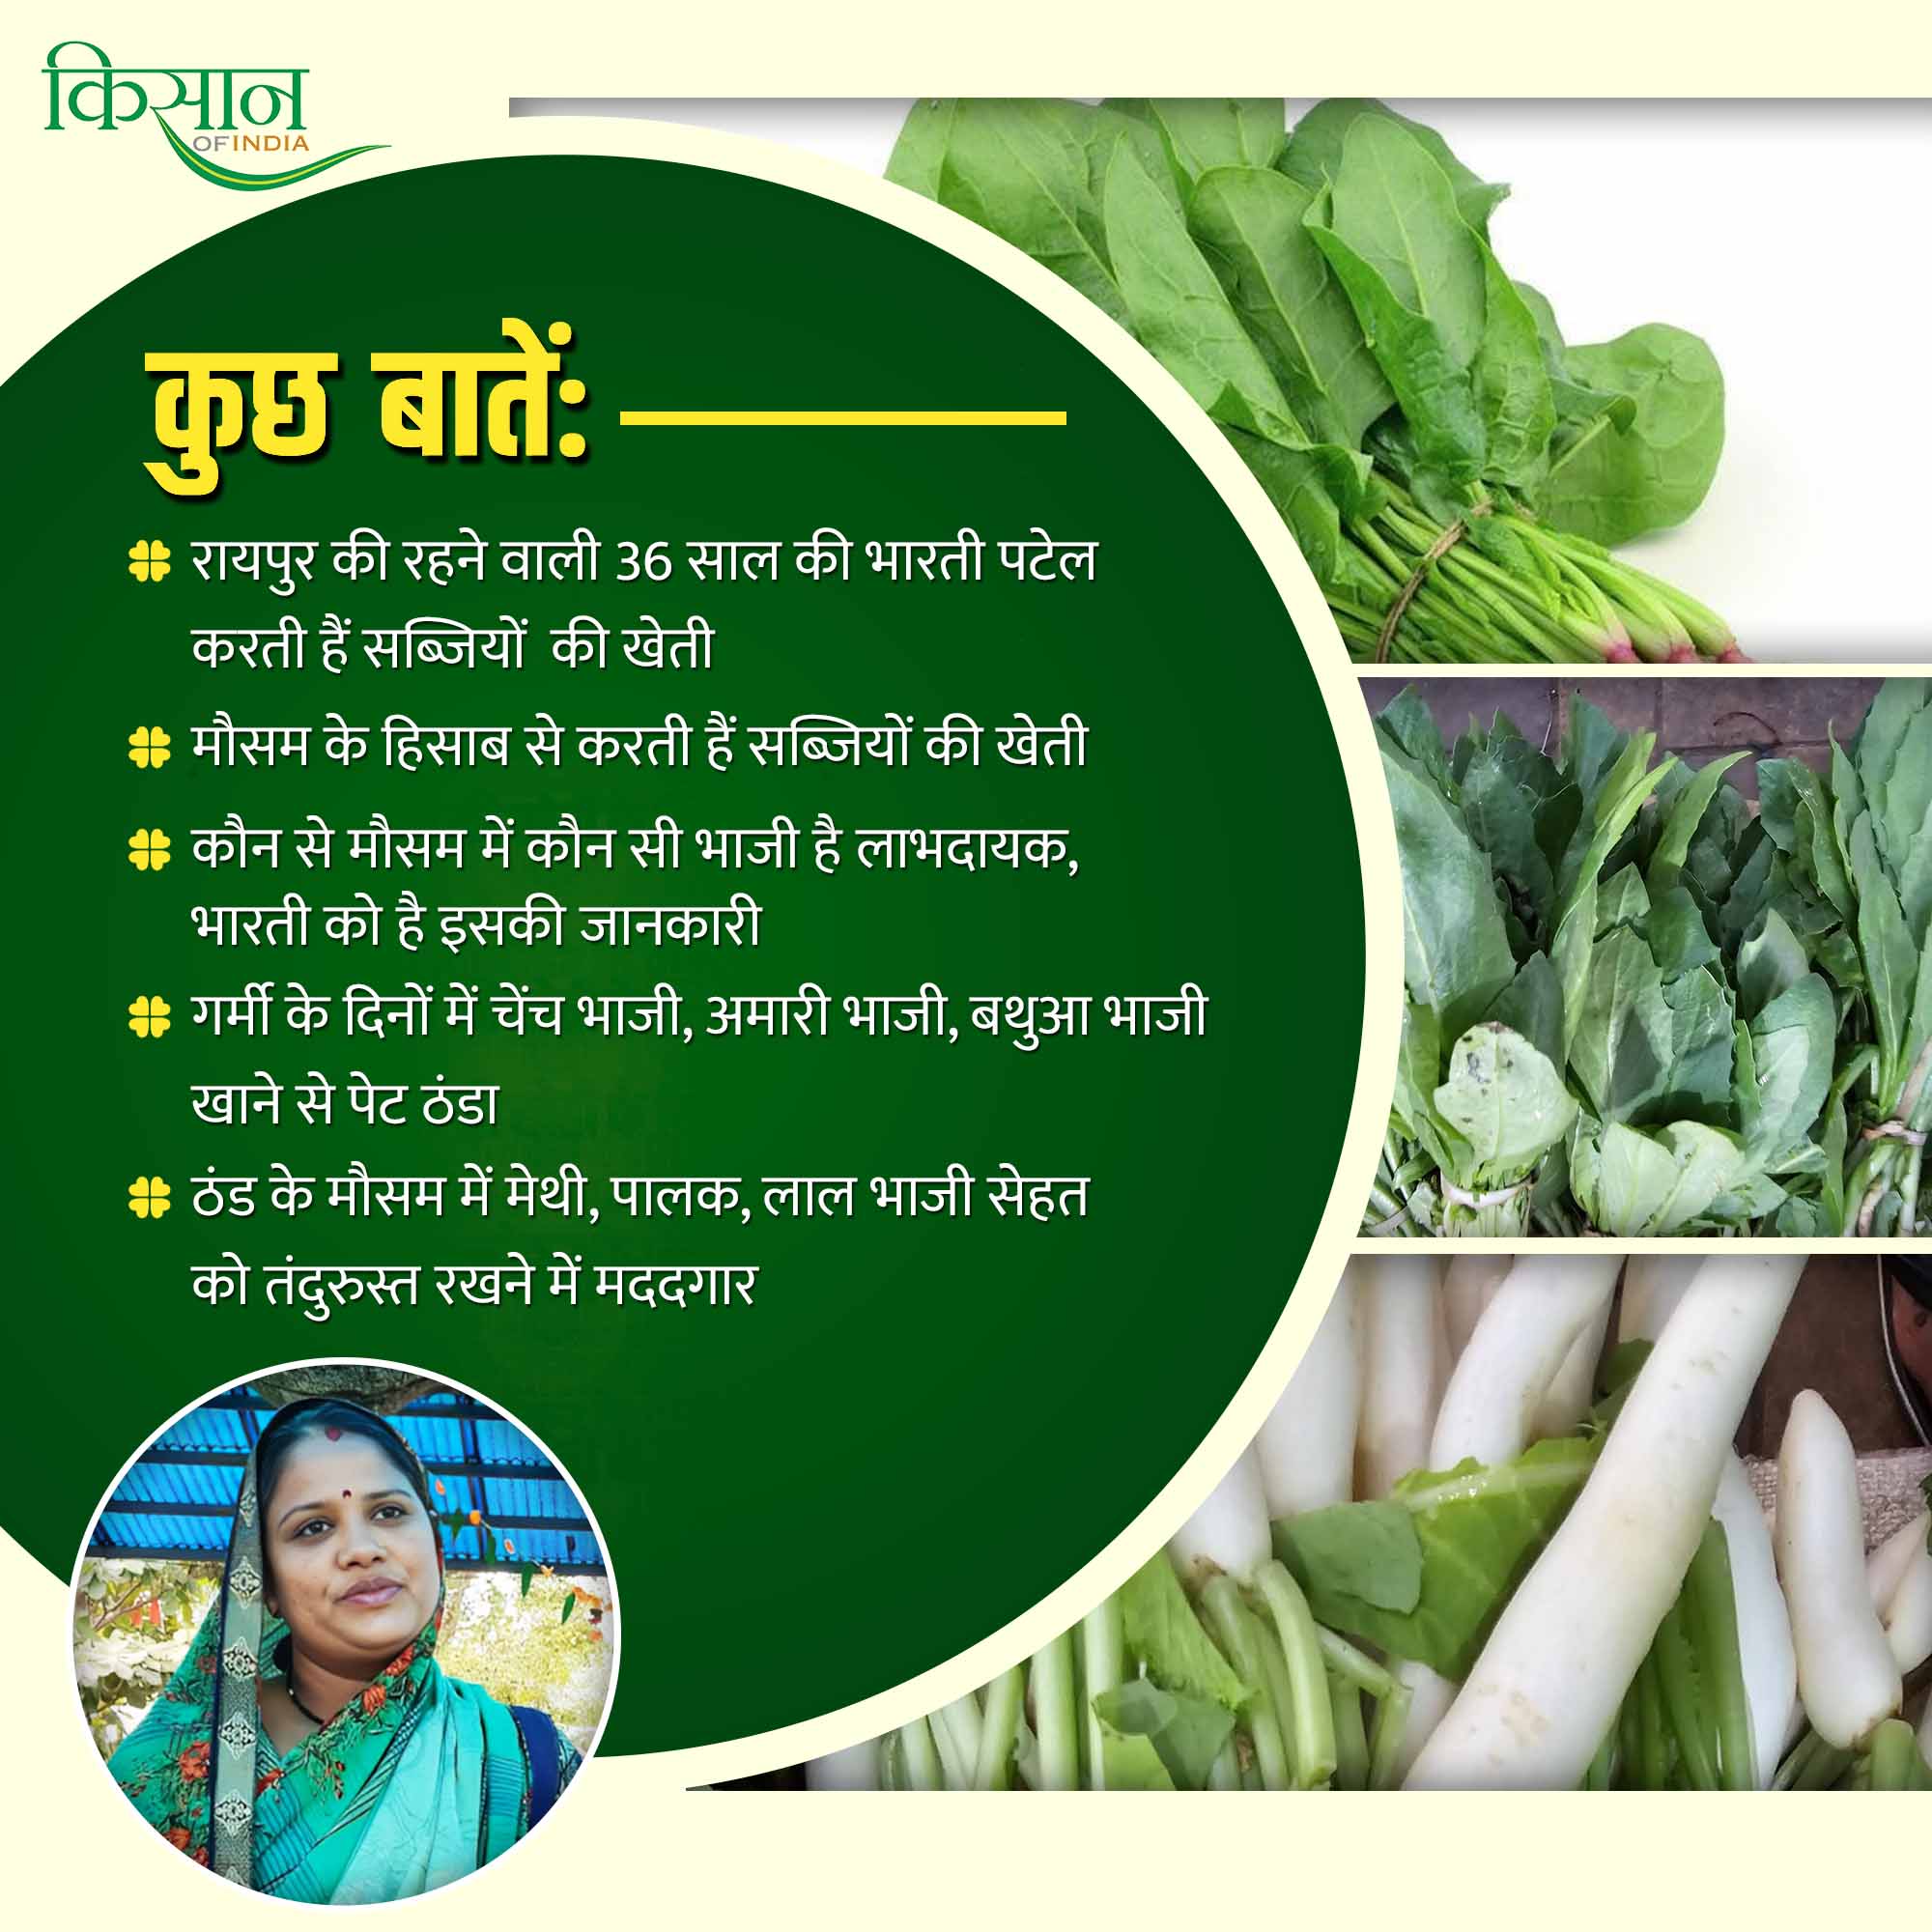 सब्जियों की खेती Chhattisgarh vegetables